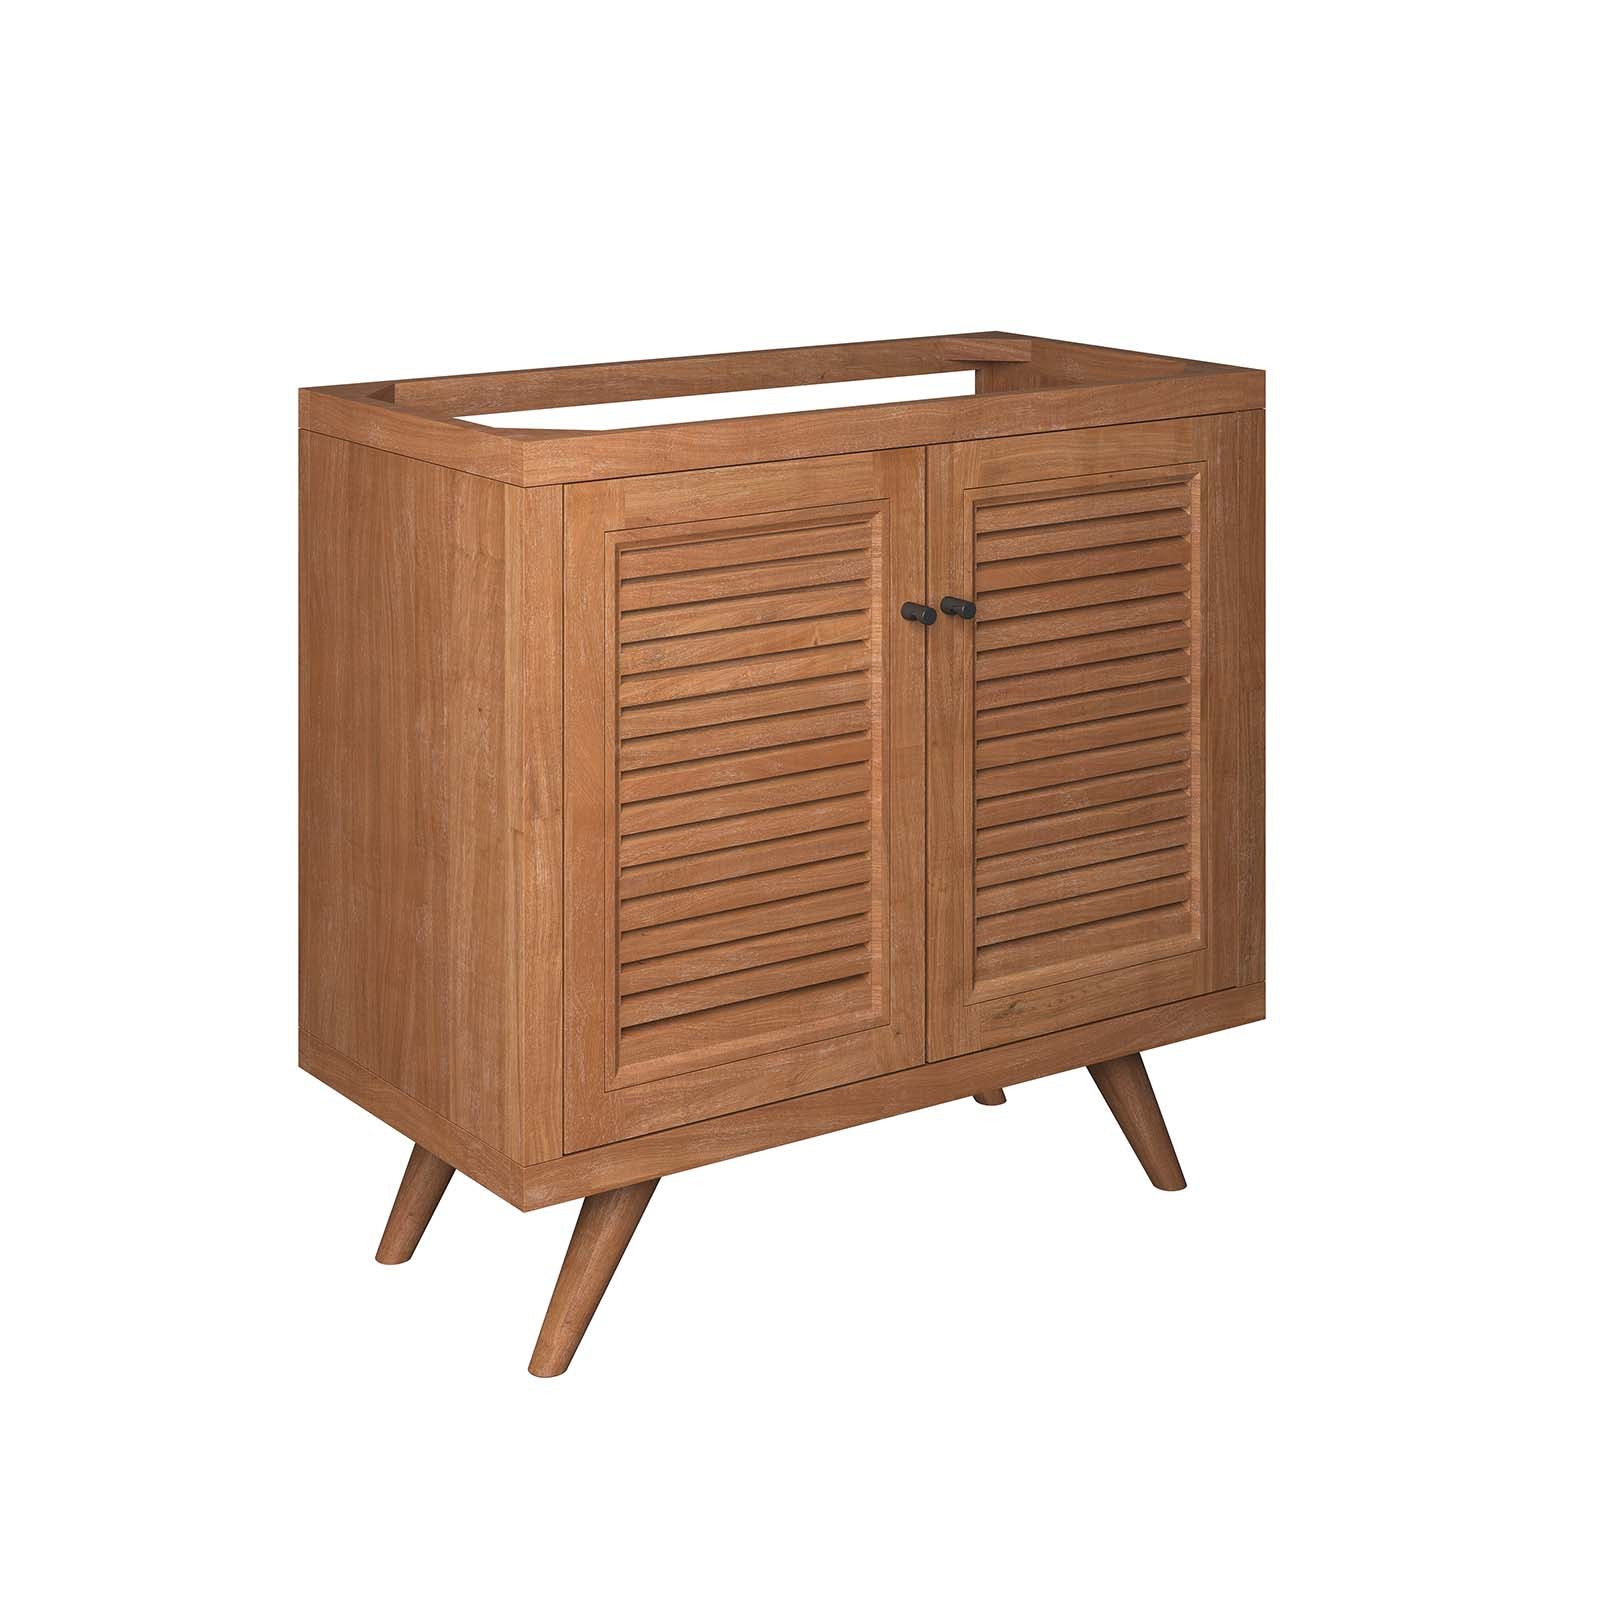 Birdie 36" Teak Wood Bathroom Vanity Cabinet (Sink Basin Not Included) - East Shore Modern Home Furnishings